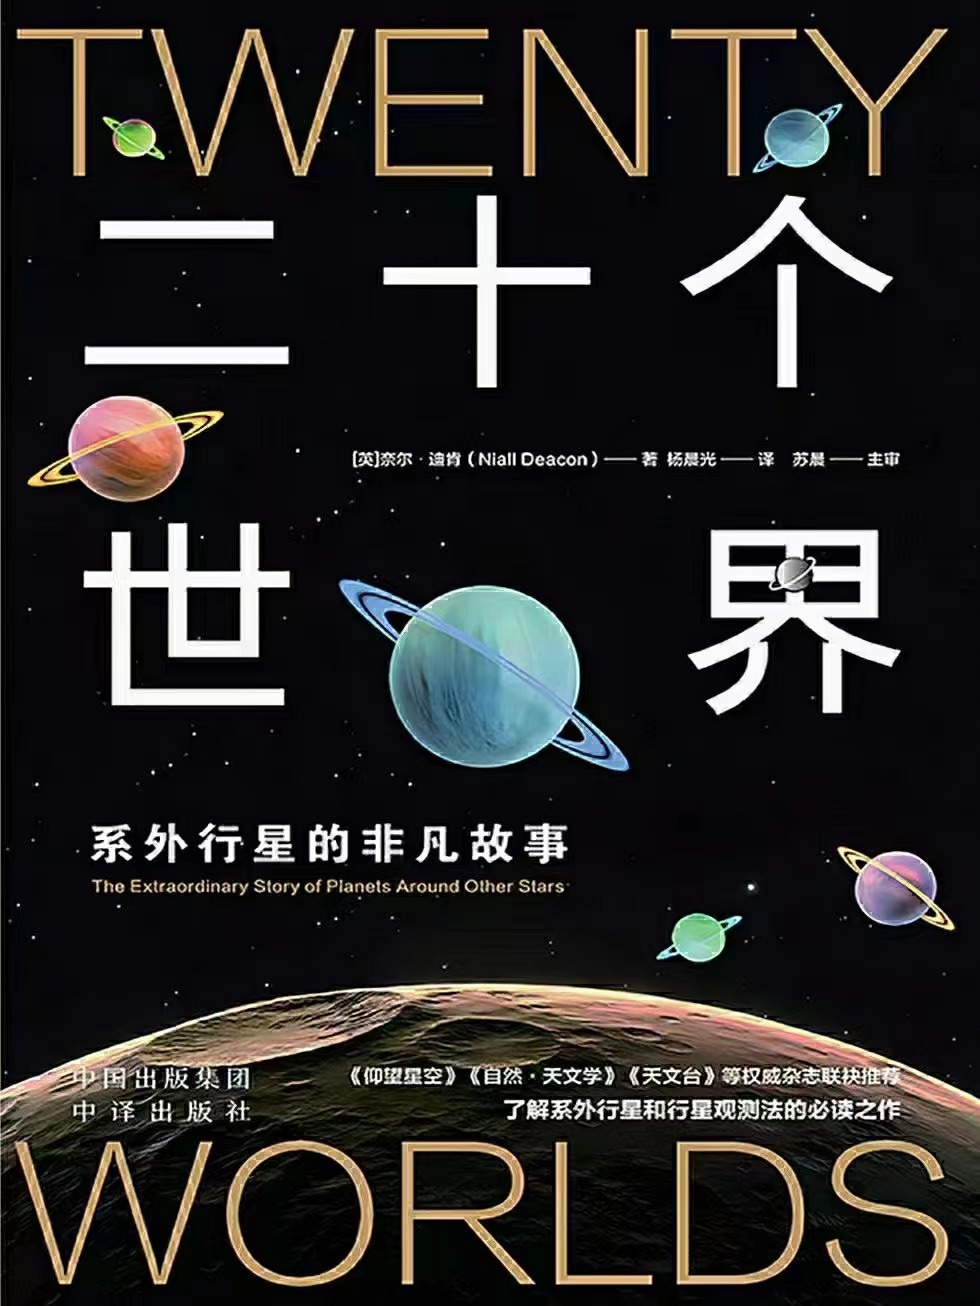 【电子书上新】 ★《二十个世界》 ~了解系外行星的非凡故事